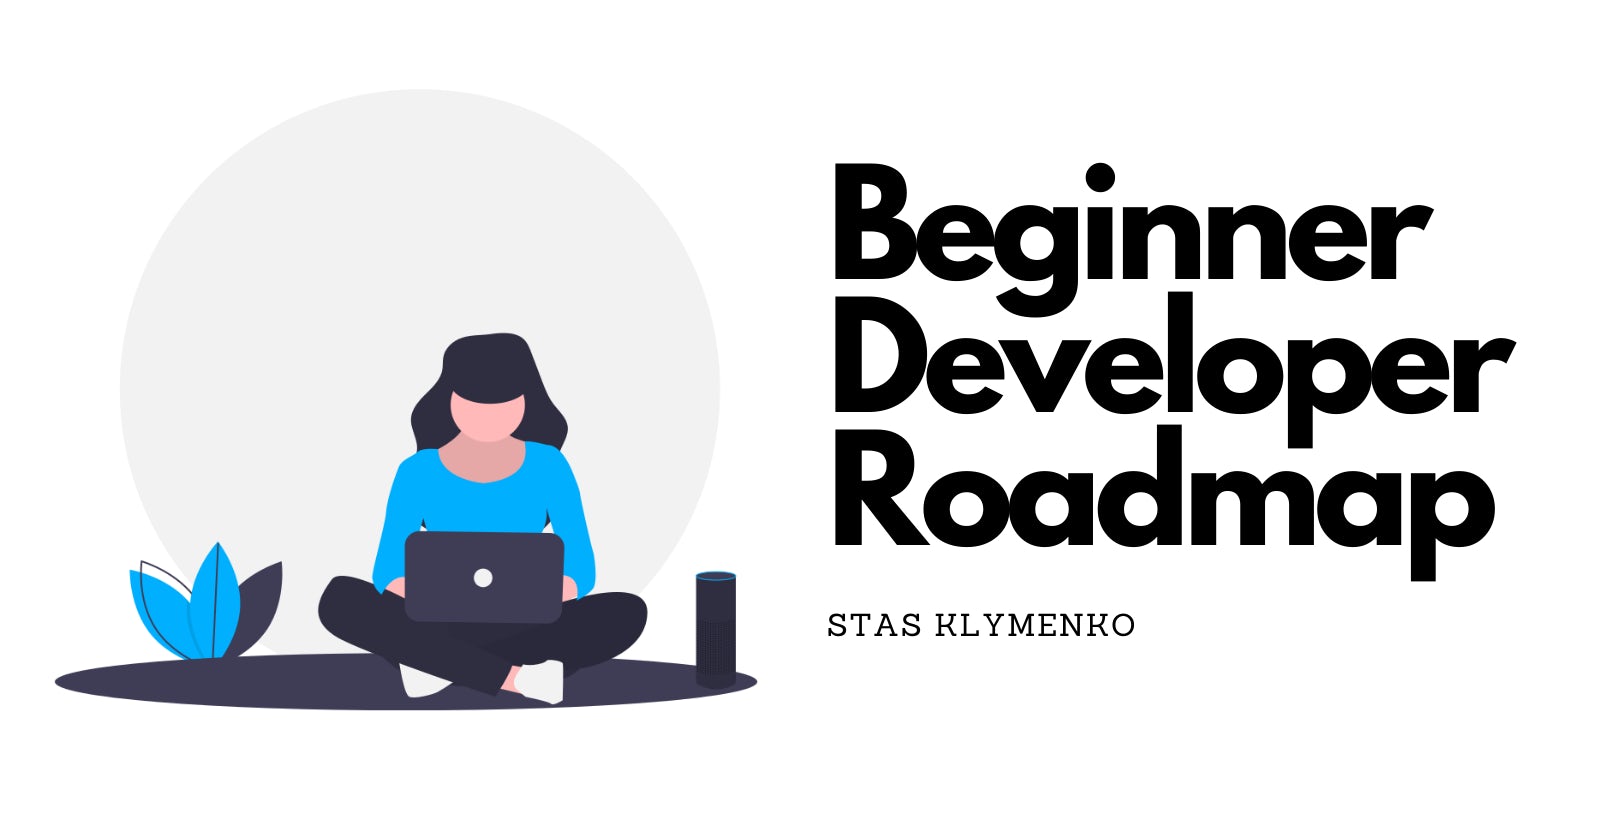 Beginner Developer Roadmap